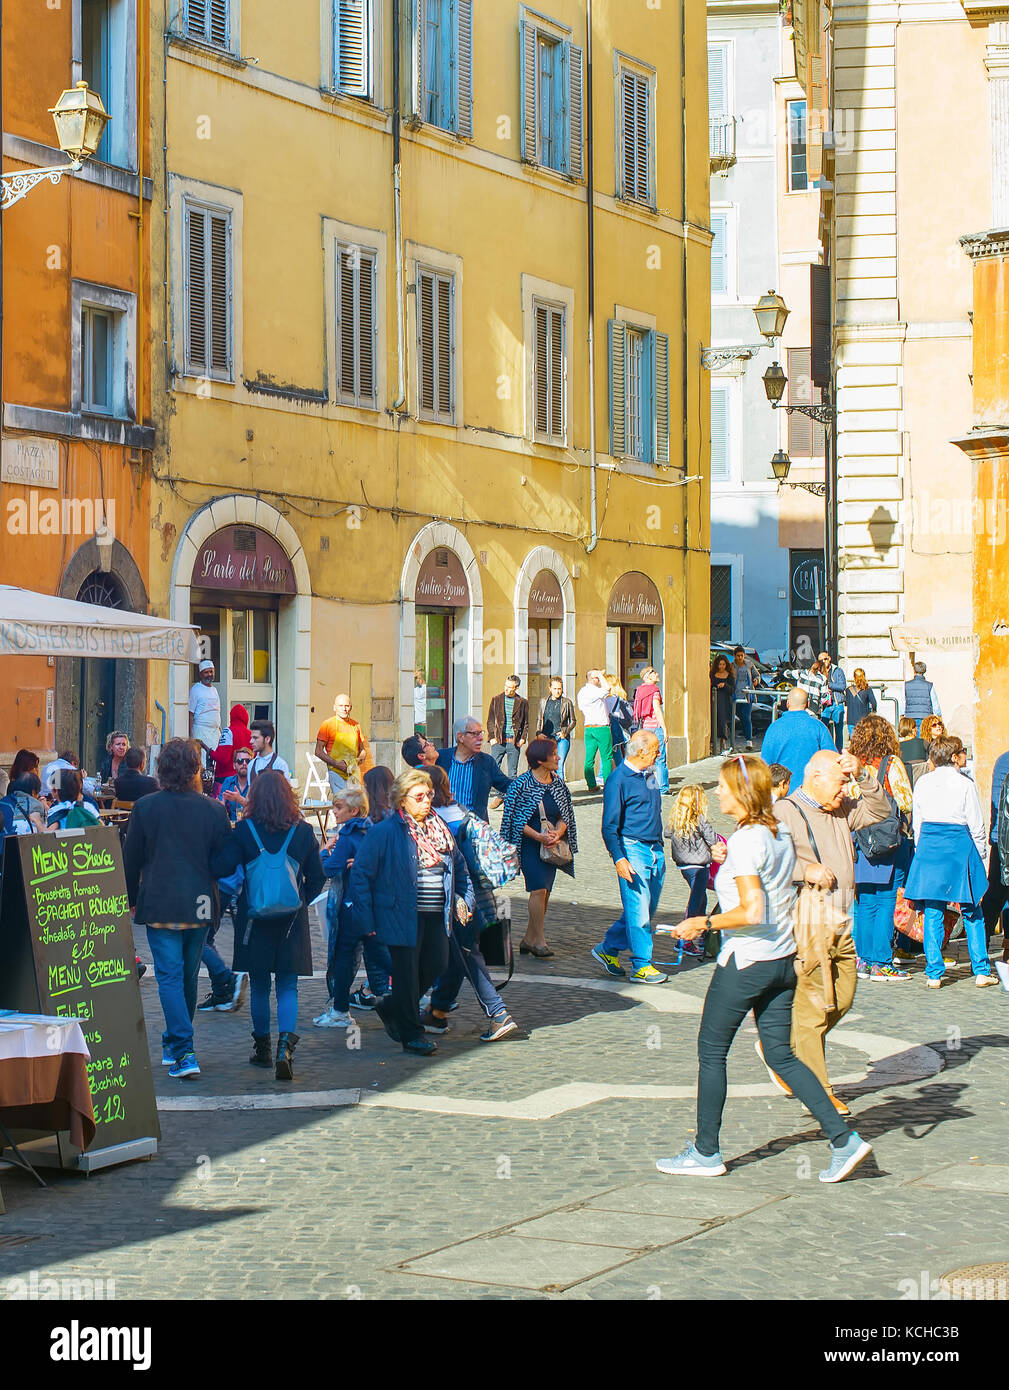 Rome, Italie - nov 01, 2016 : les gens marcher sur rue de la vieille ville de Rome. Rome est la 3ème ville la plus visitée de l'UE, après Londres et Paris, et réc Banque D'Images